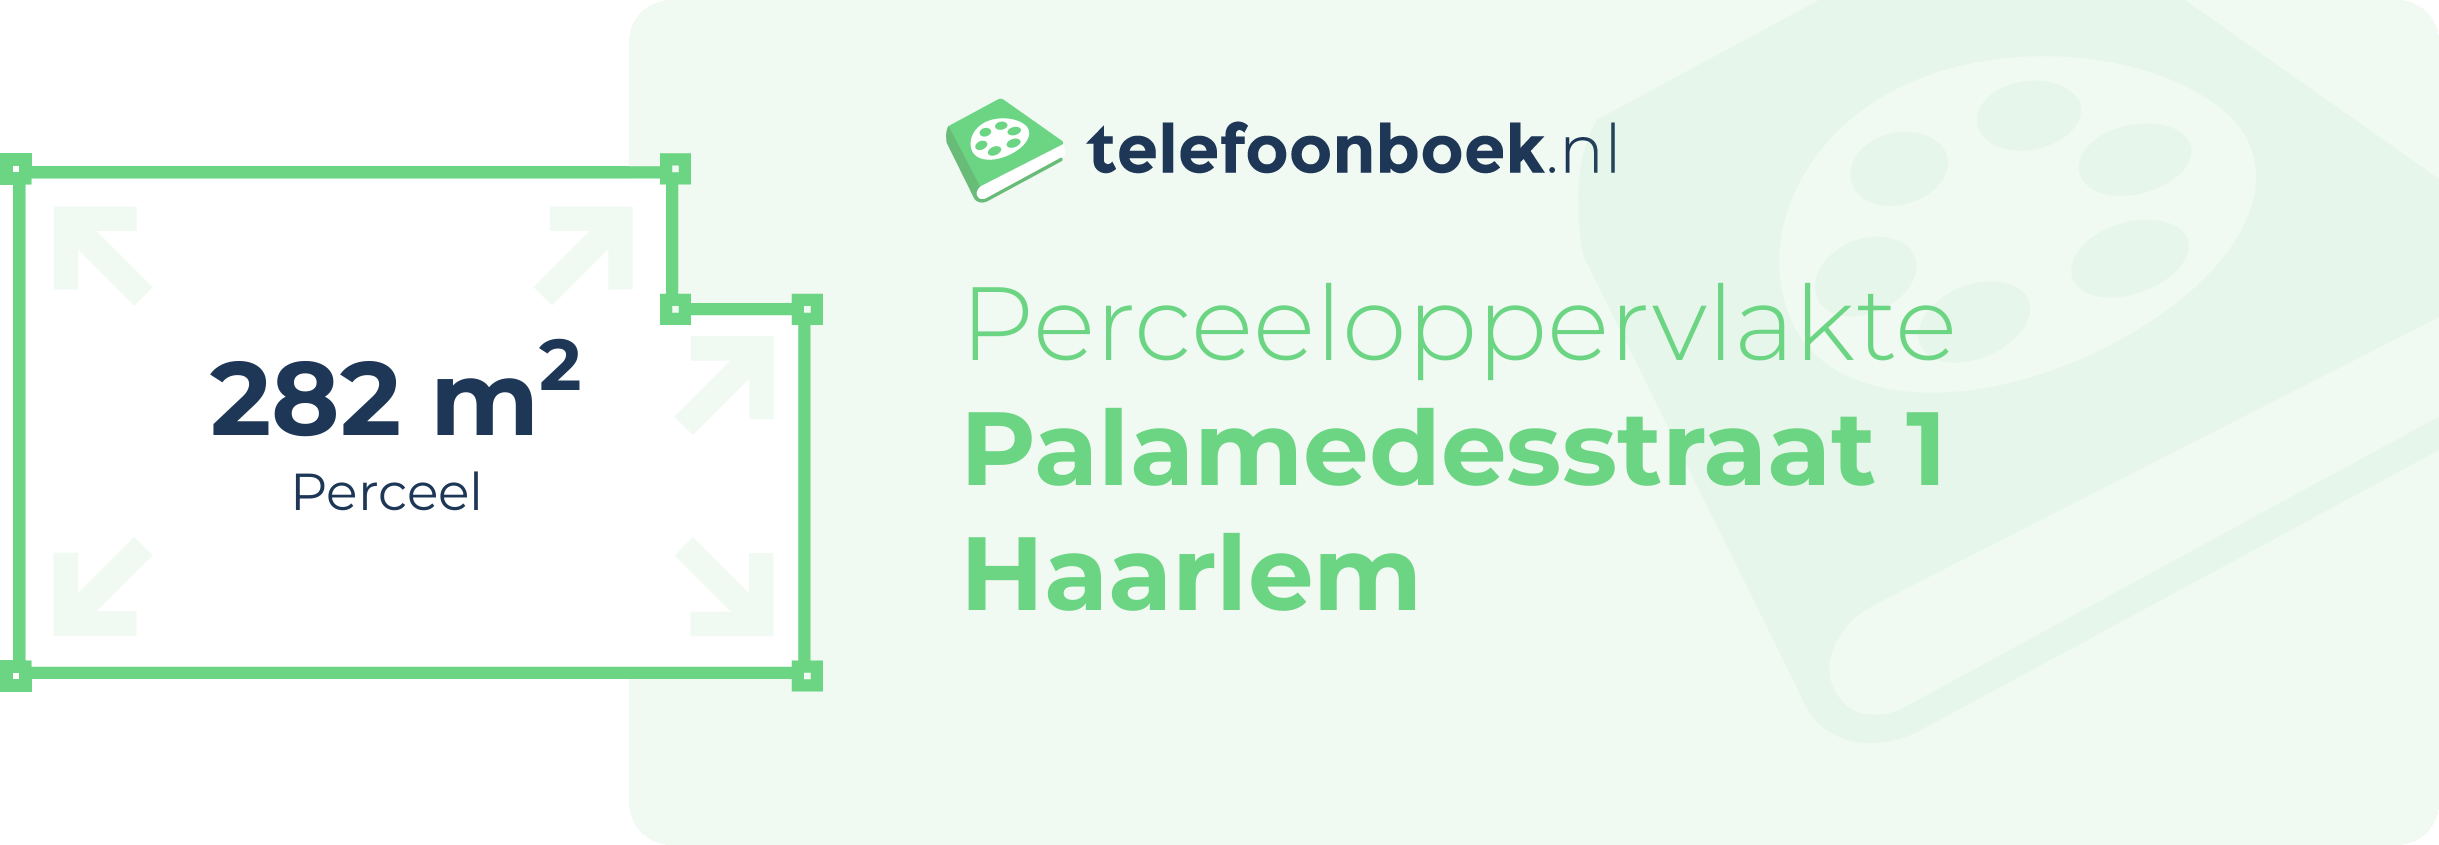 Perceeloppervlakte Palamedesstraat 1 Haarlem